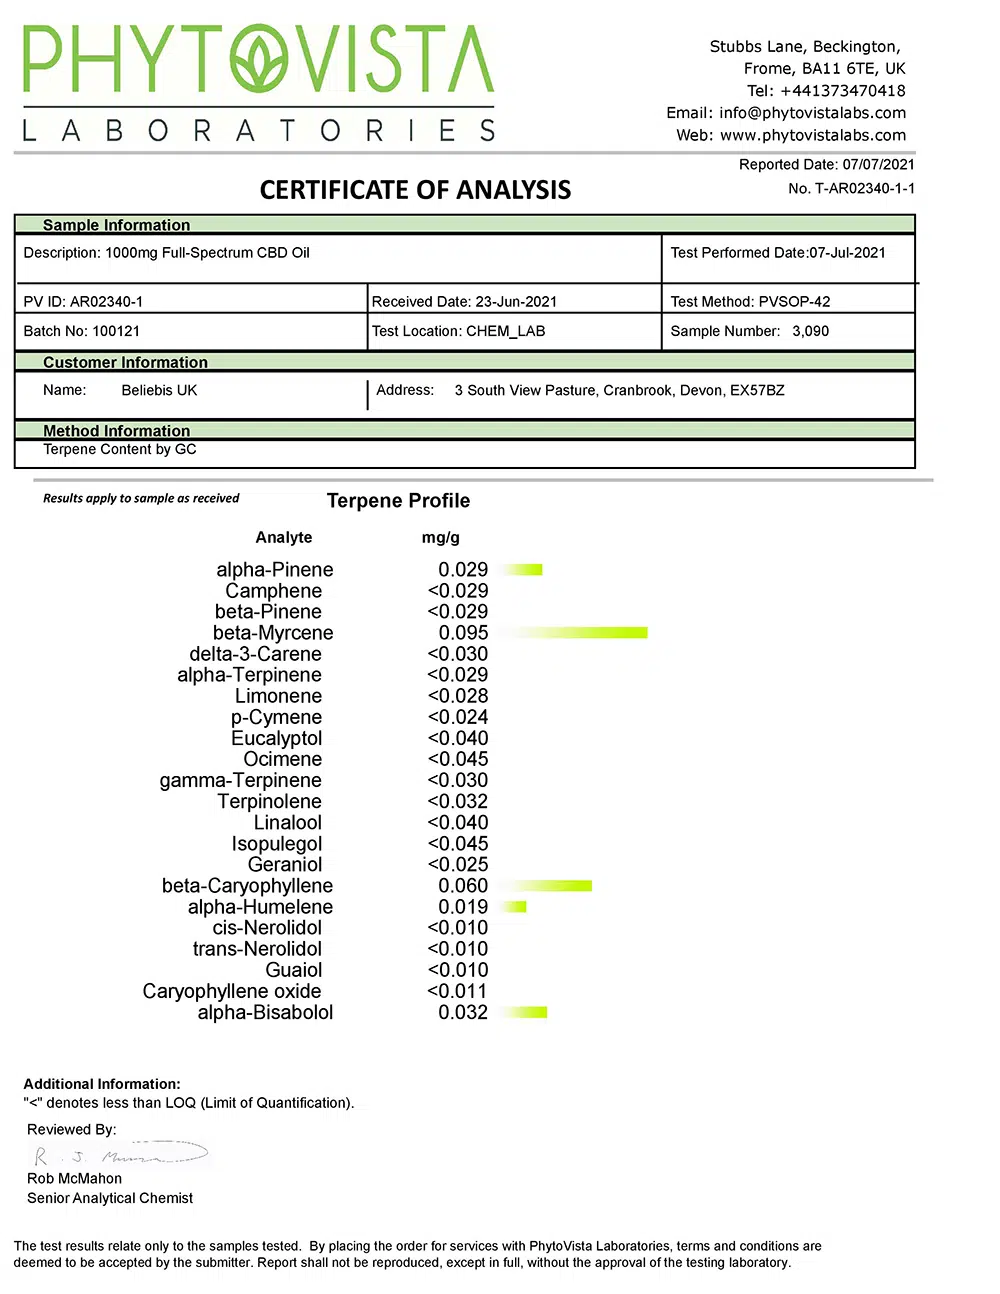 Terpene Certificate of Analysis - Full Spectrum CBD Oil 1000mg